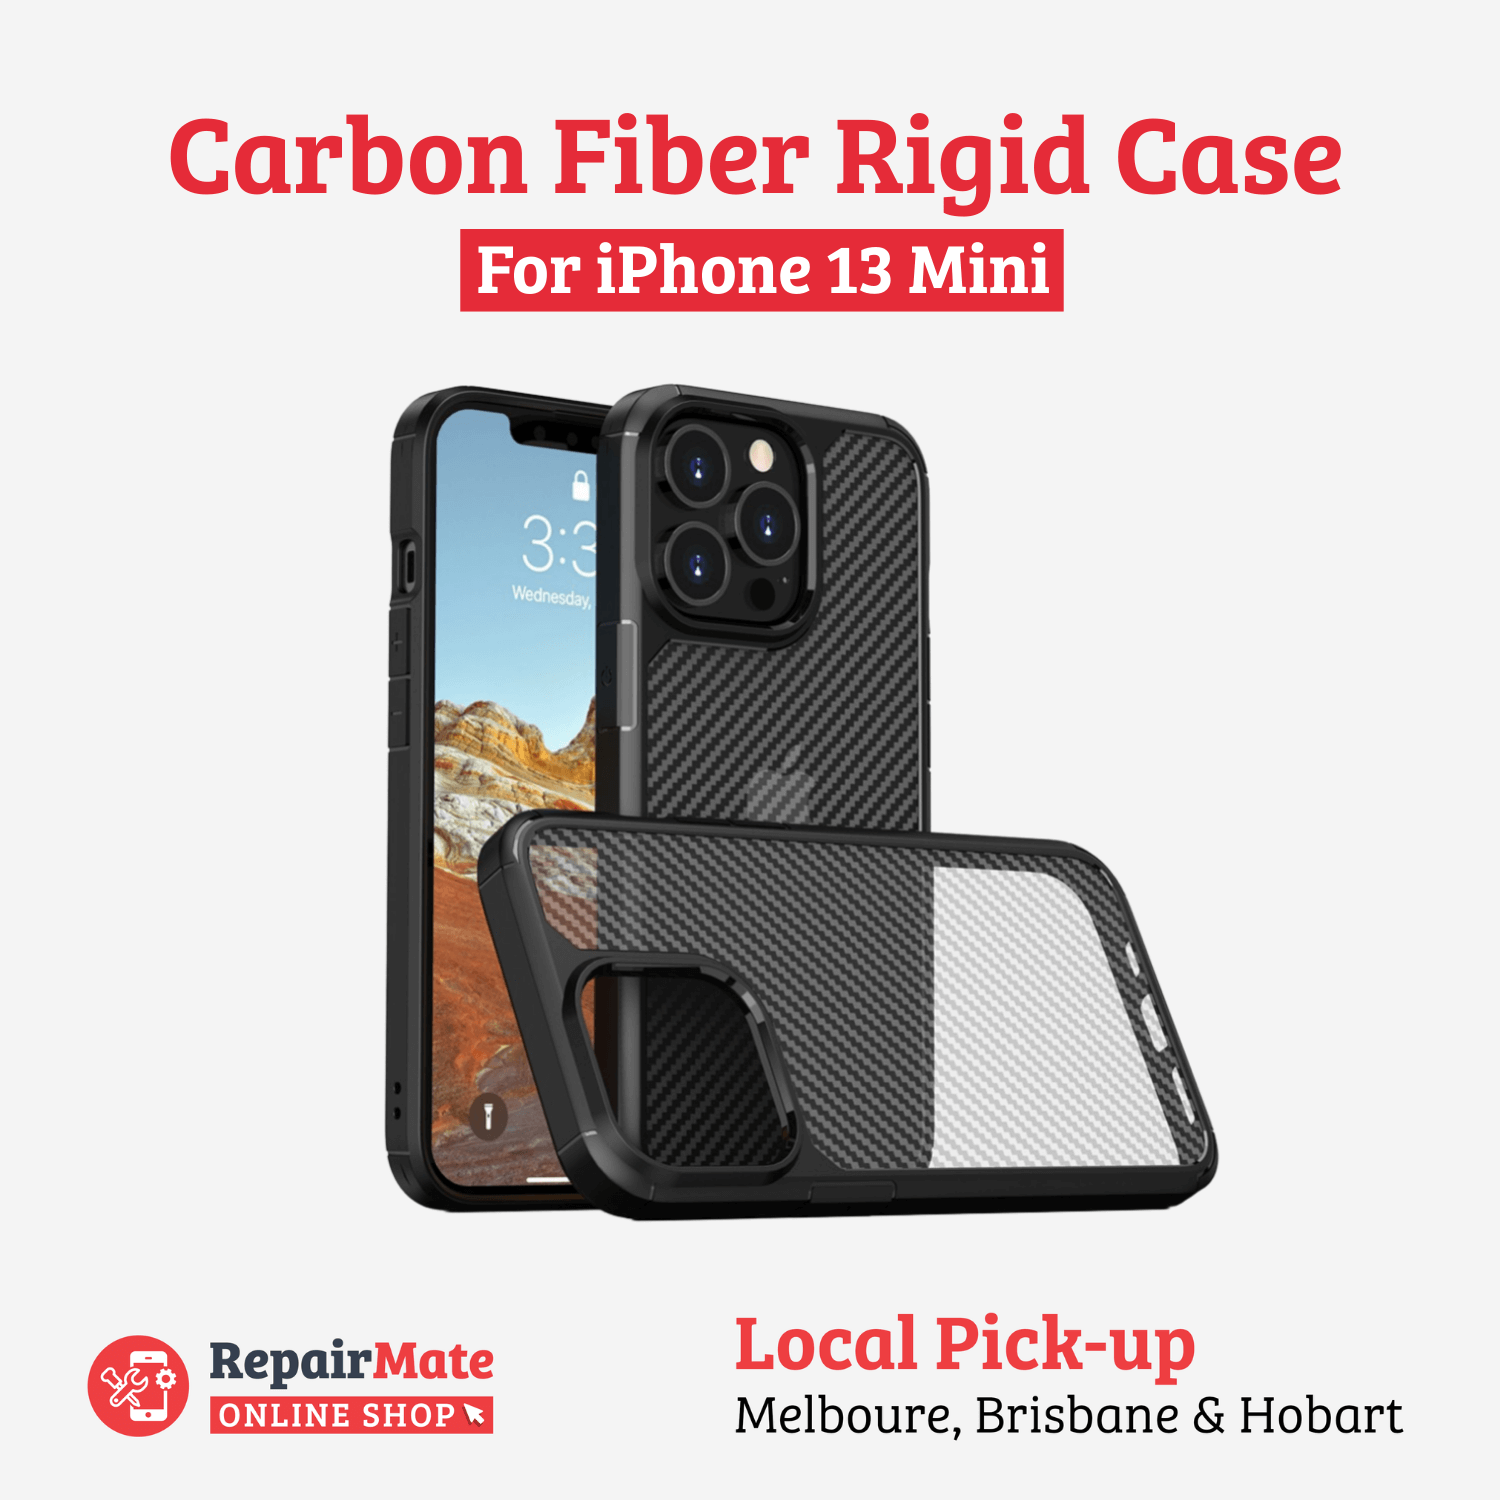 iPhone 13 Mini Carbon Fiber Rigid Case Cover